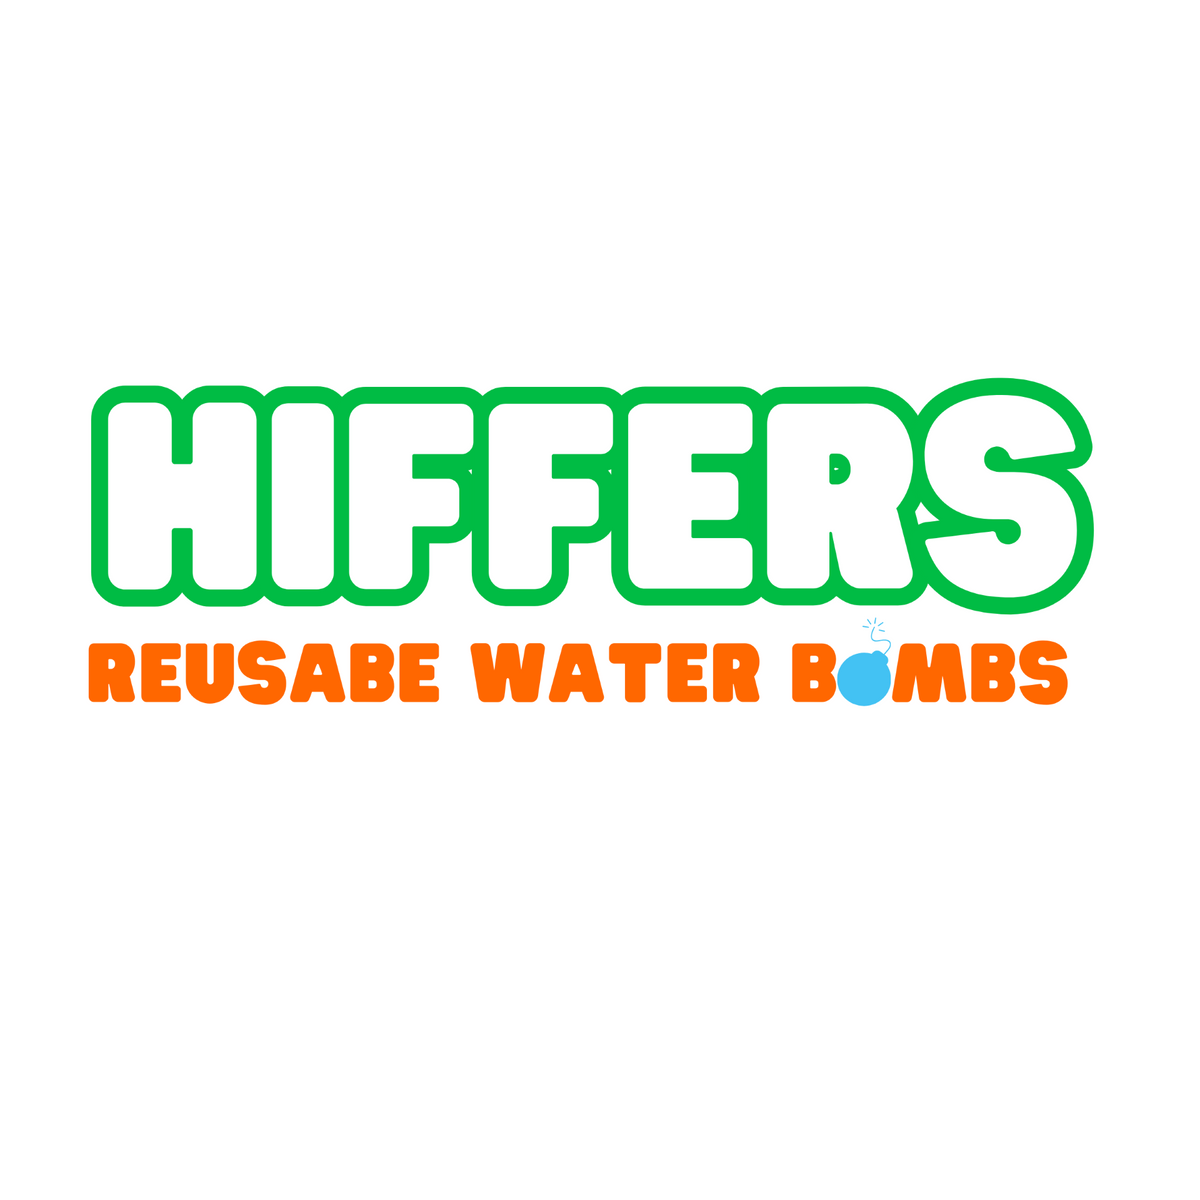 Hiffers - Reusable Water Bombs - Mixed Bag